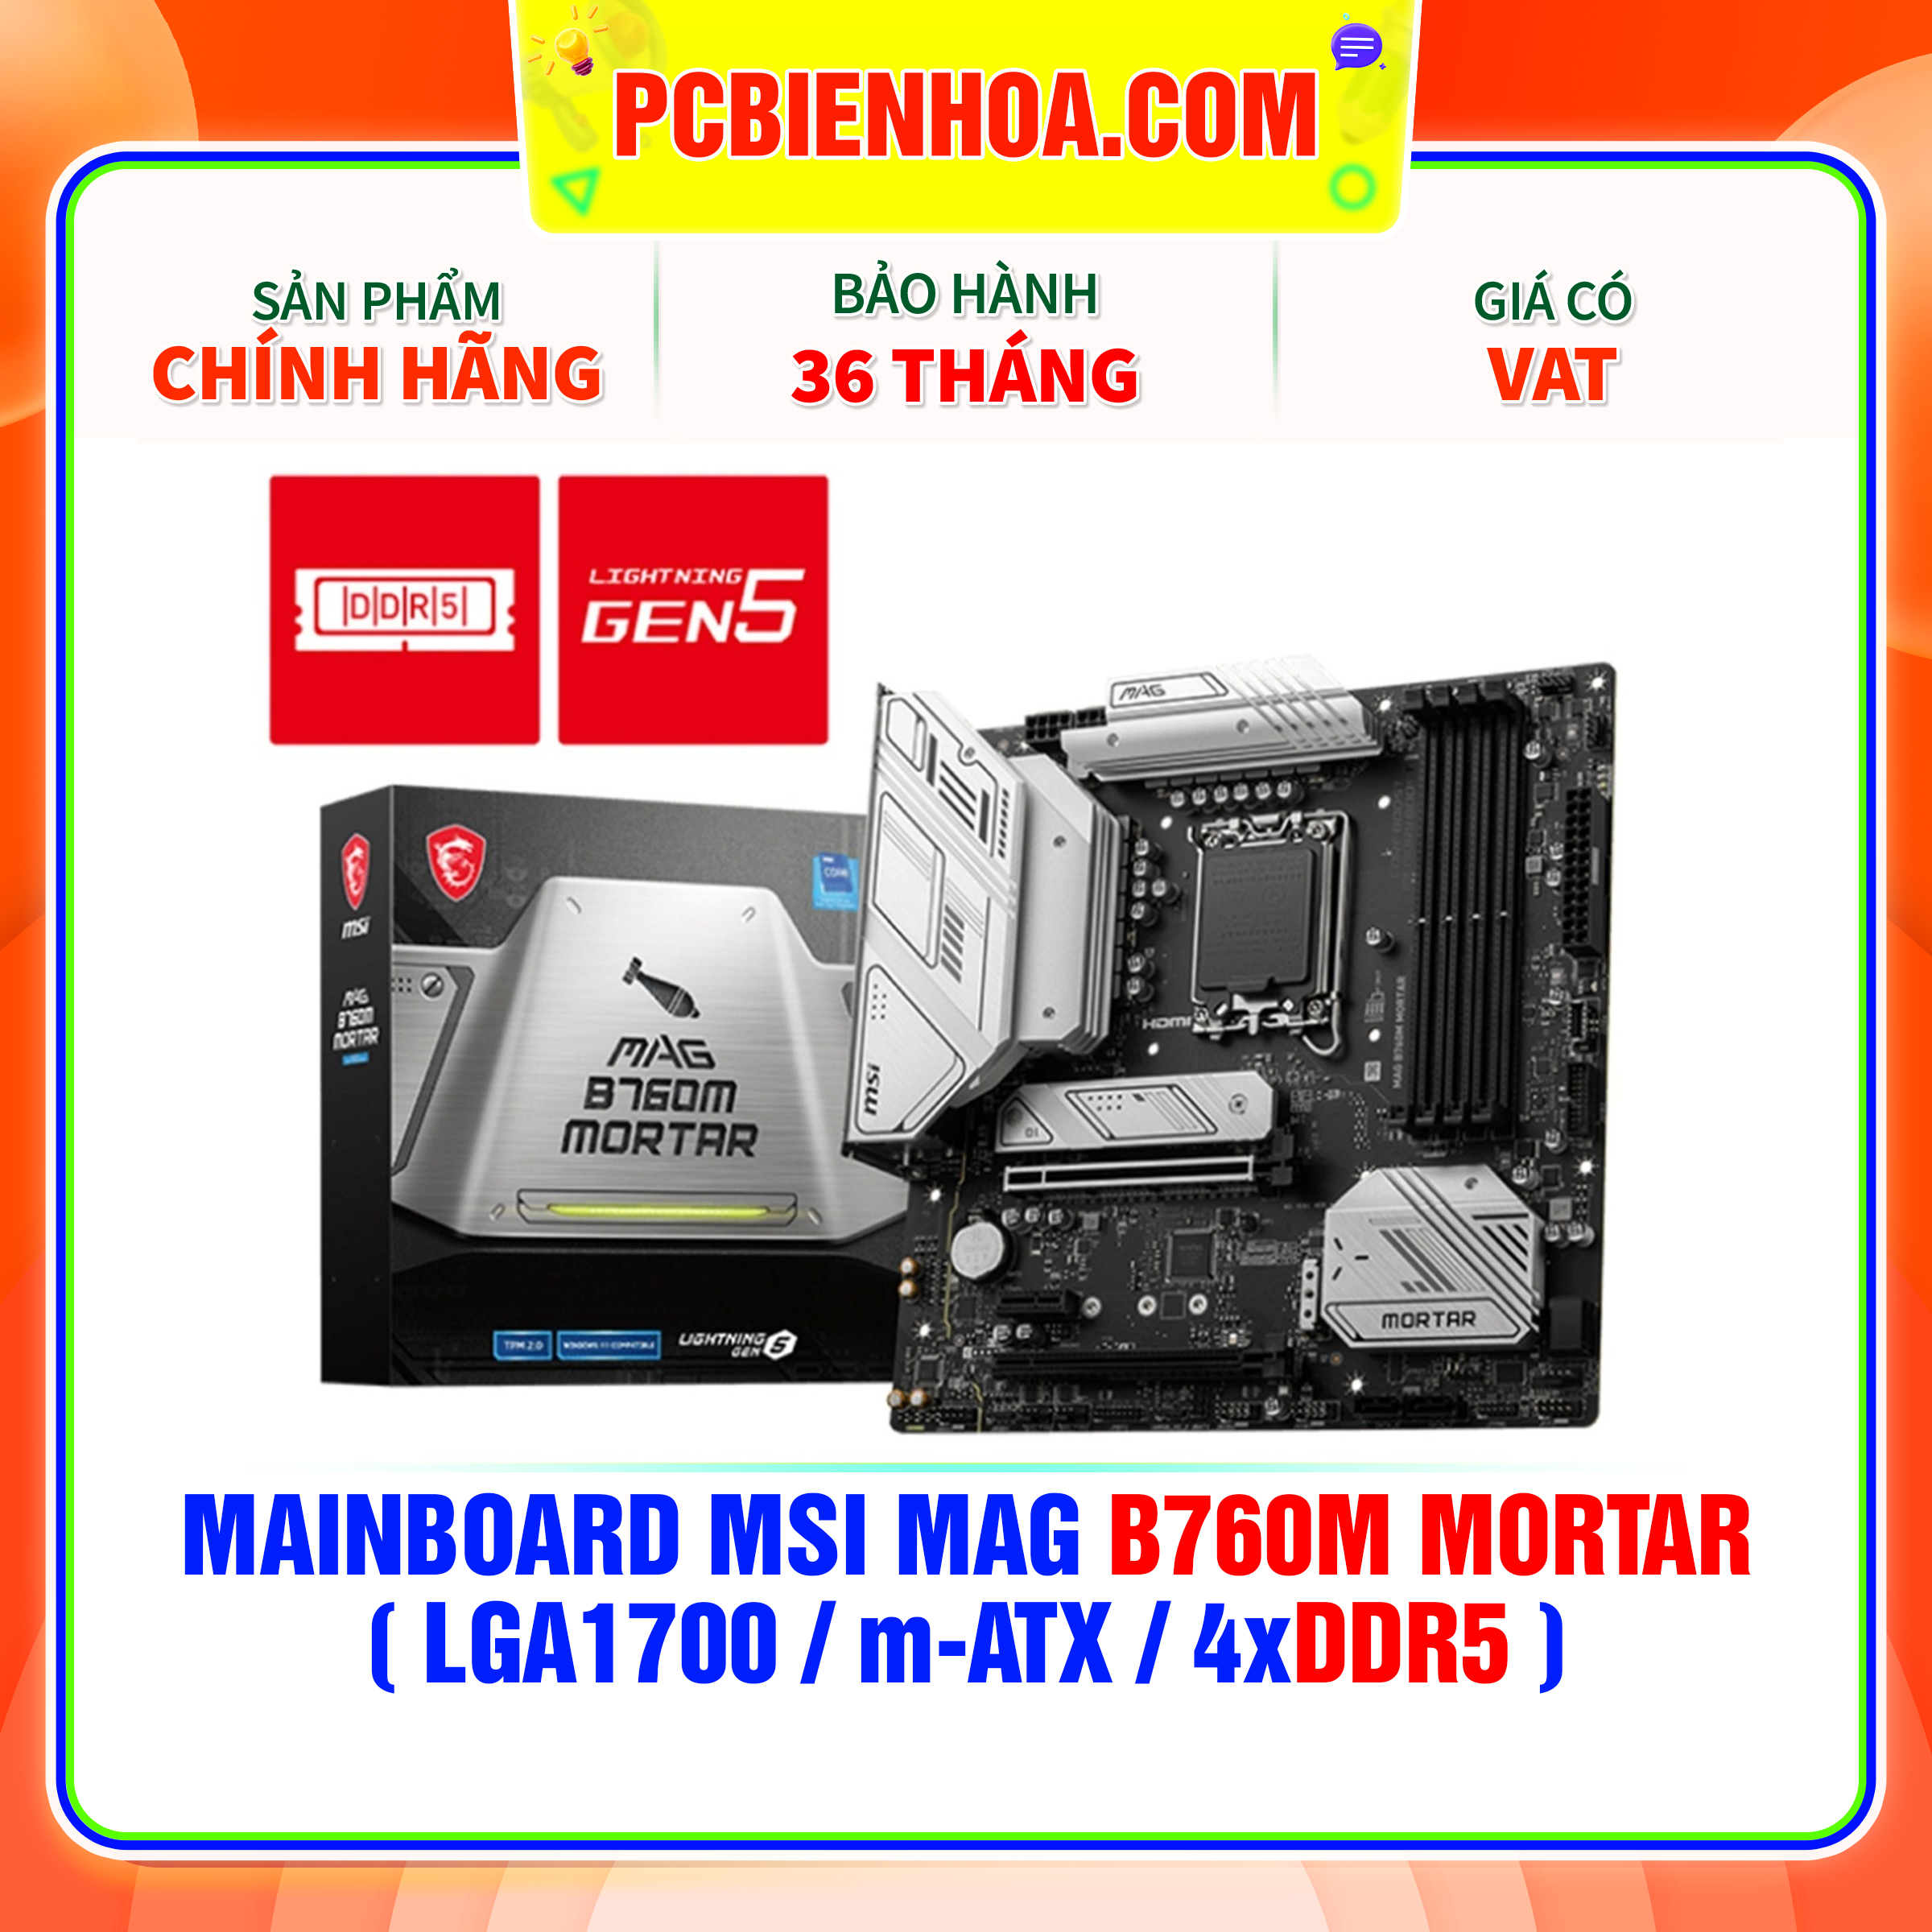 MAINBOARD MSI MAG B760M MORTAR  LGA1700 m-ATX 4xDDR5